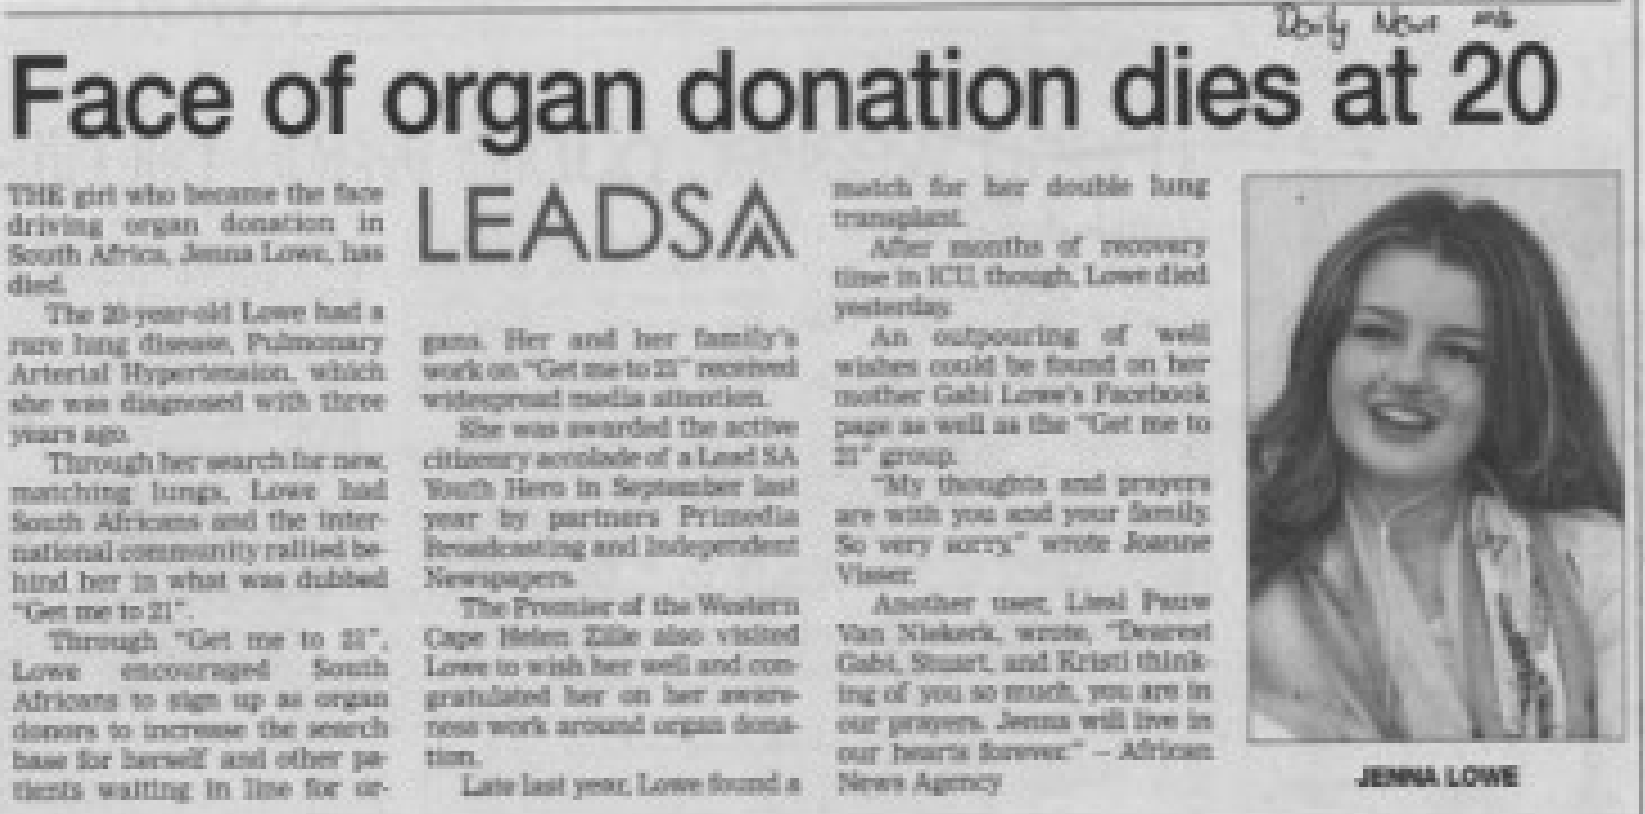 Face of organ donation dies at 20